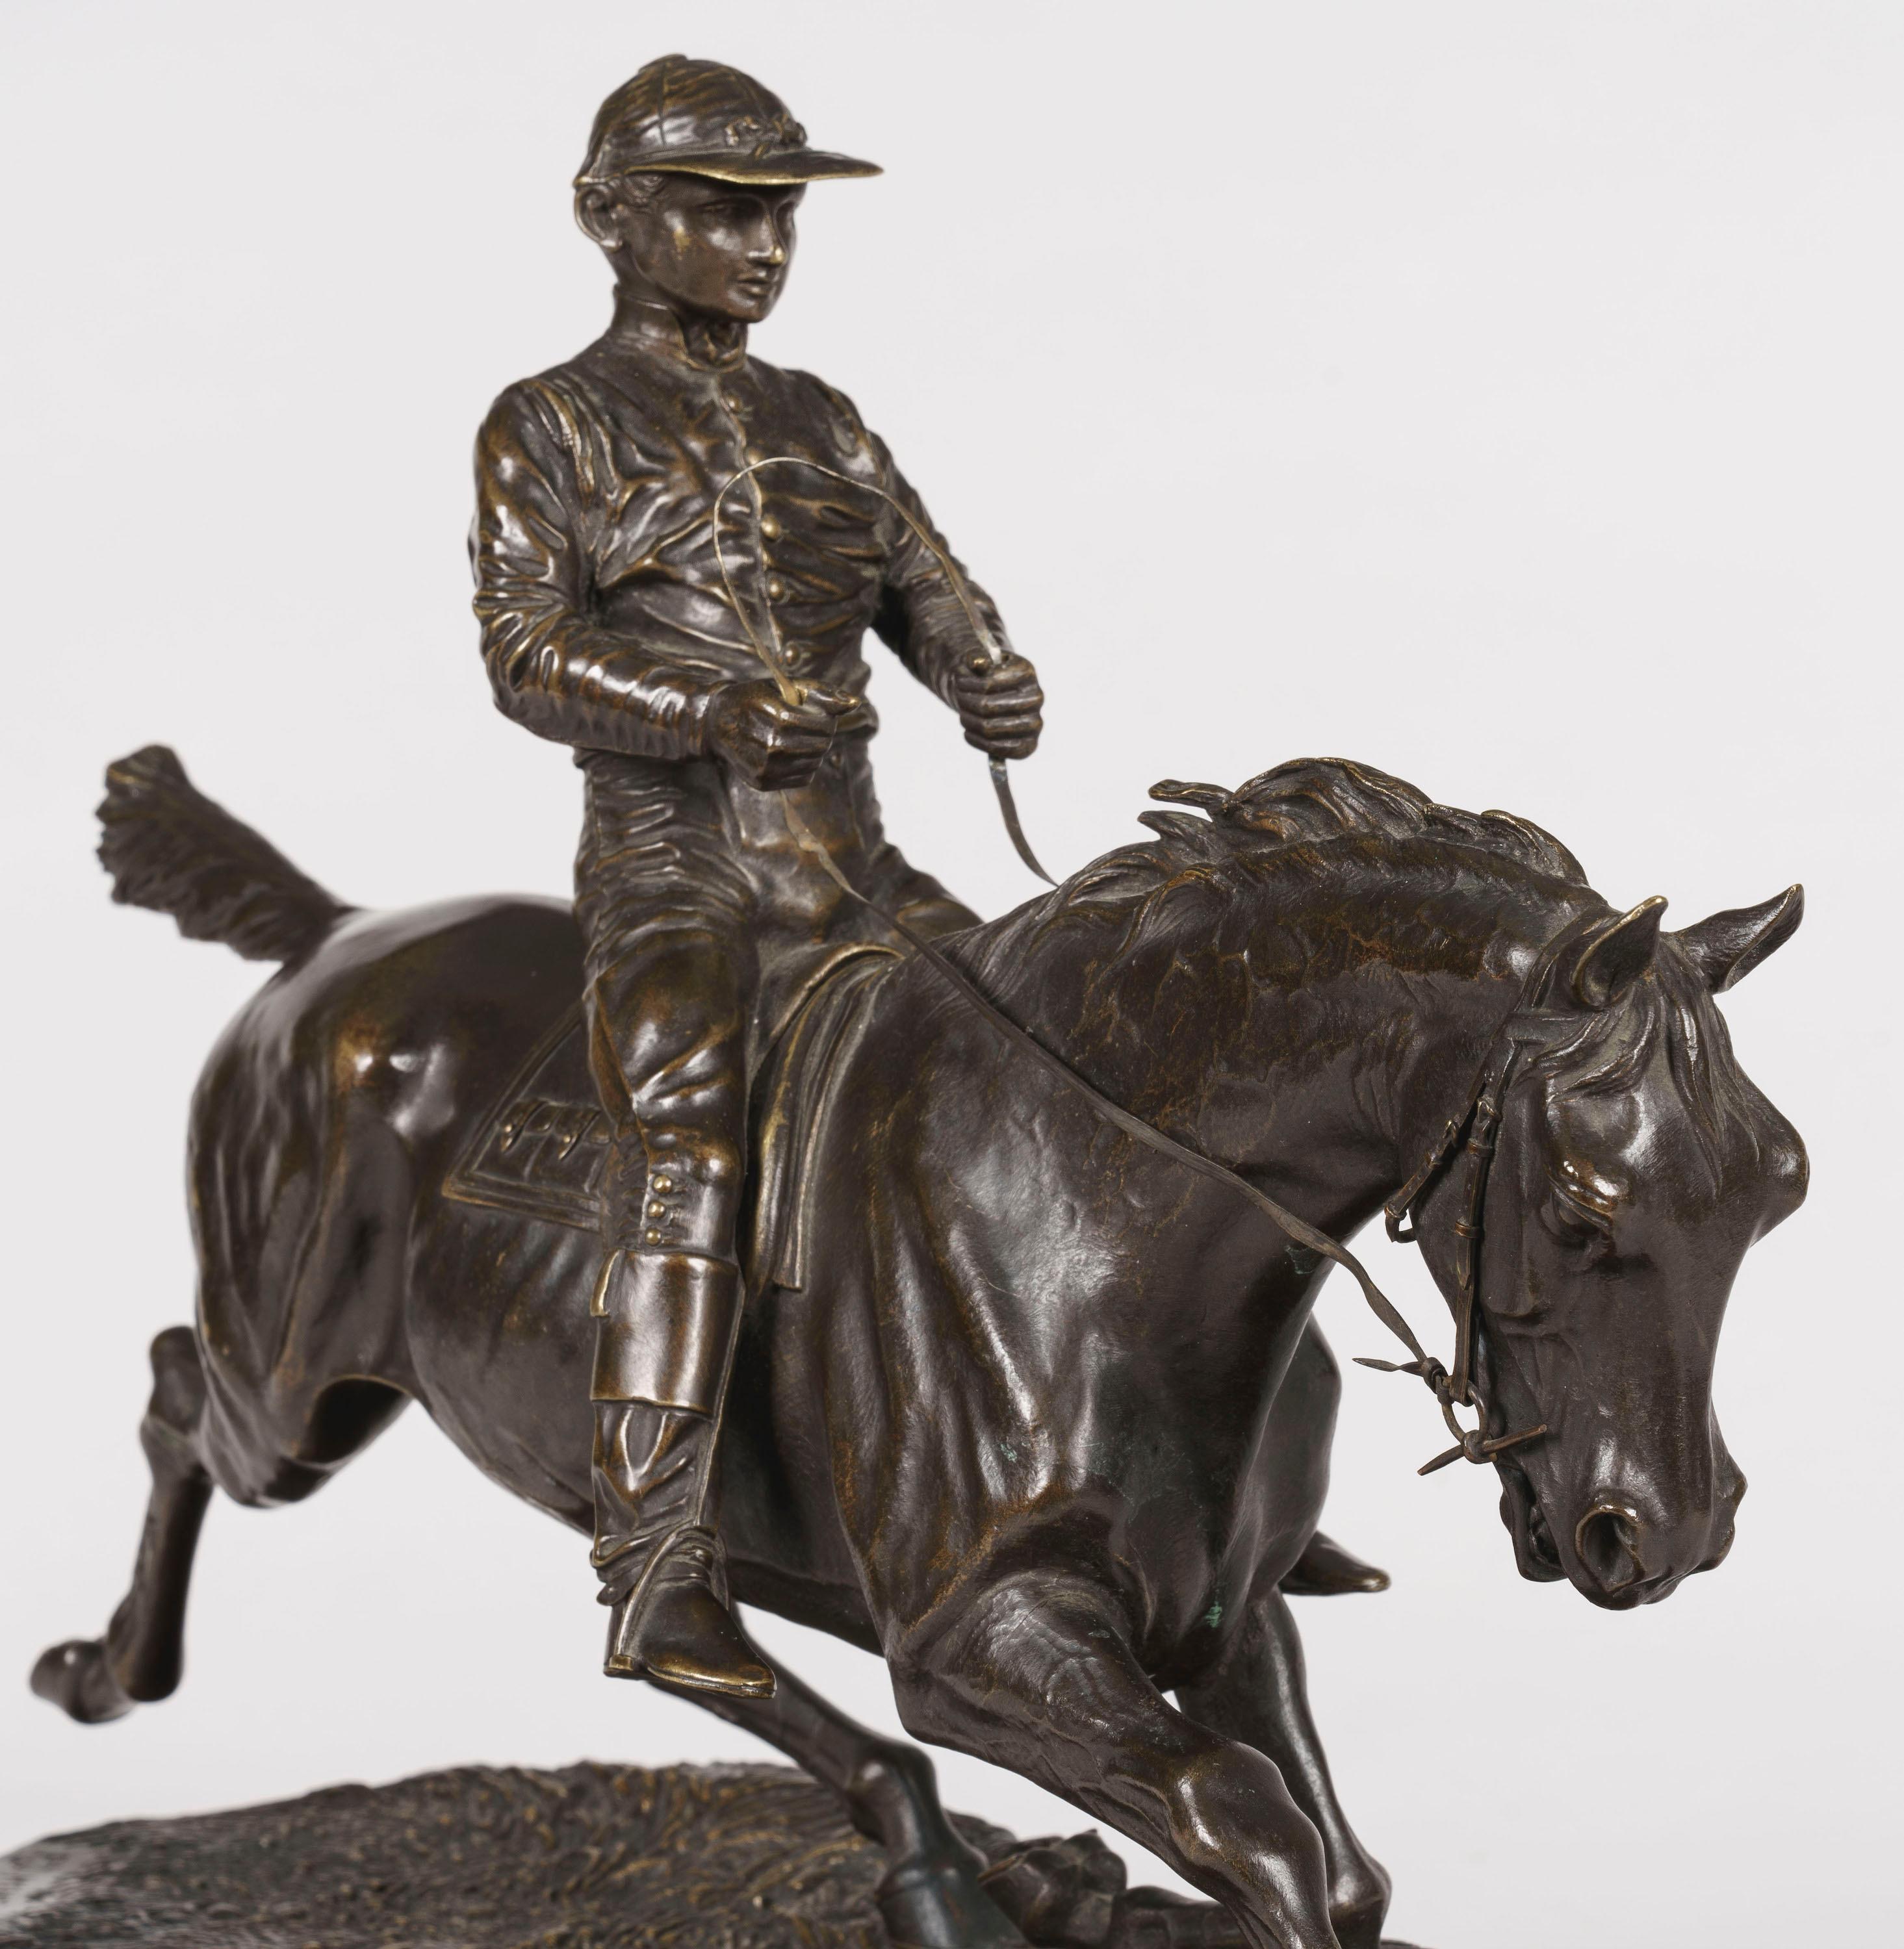 Eine Pferdeskulptur
nach Pierre-Jules Mêne

Naturalistisches, detailgetreues und schön patiniertes Bronzemodell eines Jockeys auf seinem galoppierenden Pferd, der realistische topographische Sockel signiert 